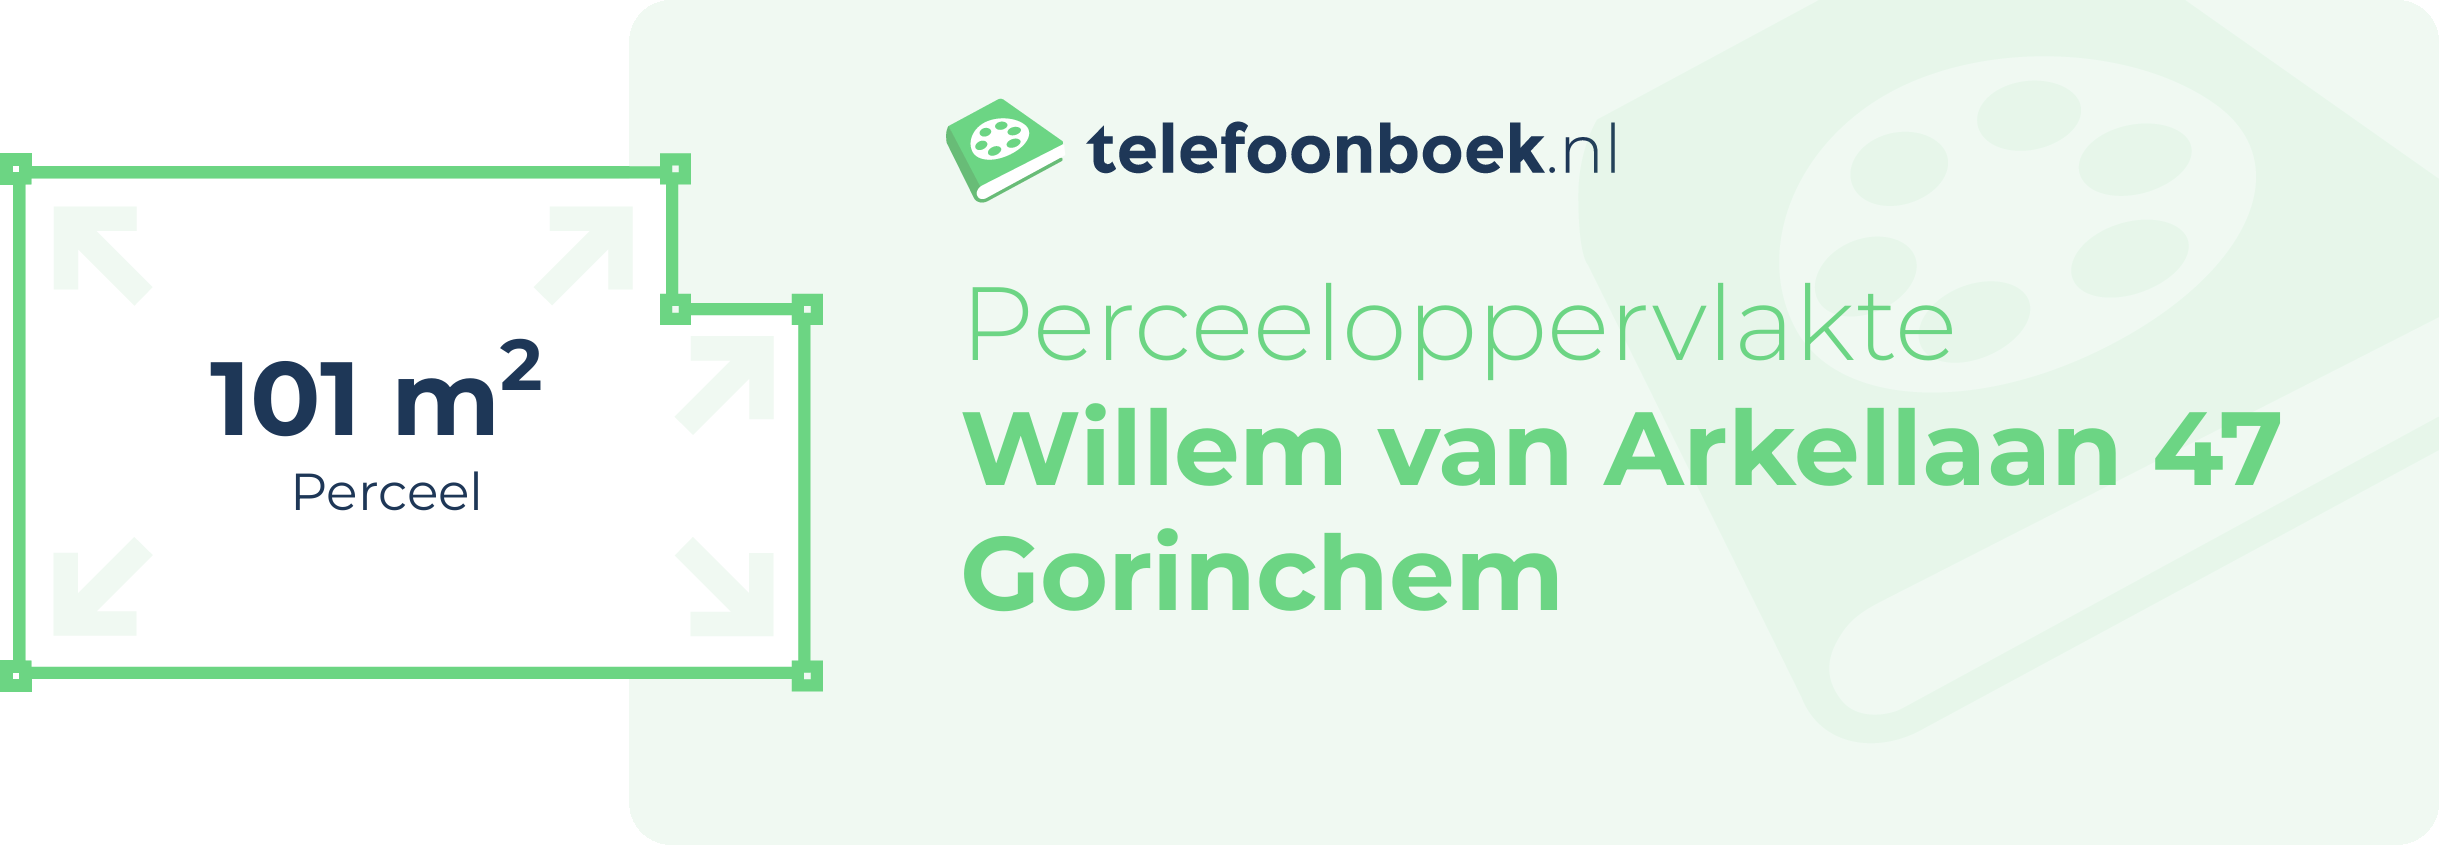 Perceeloppervlakte Willem Van Arkellaan 47 Gorinchem